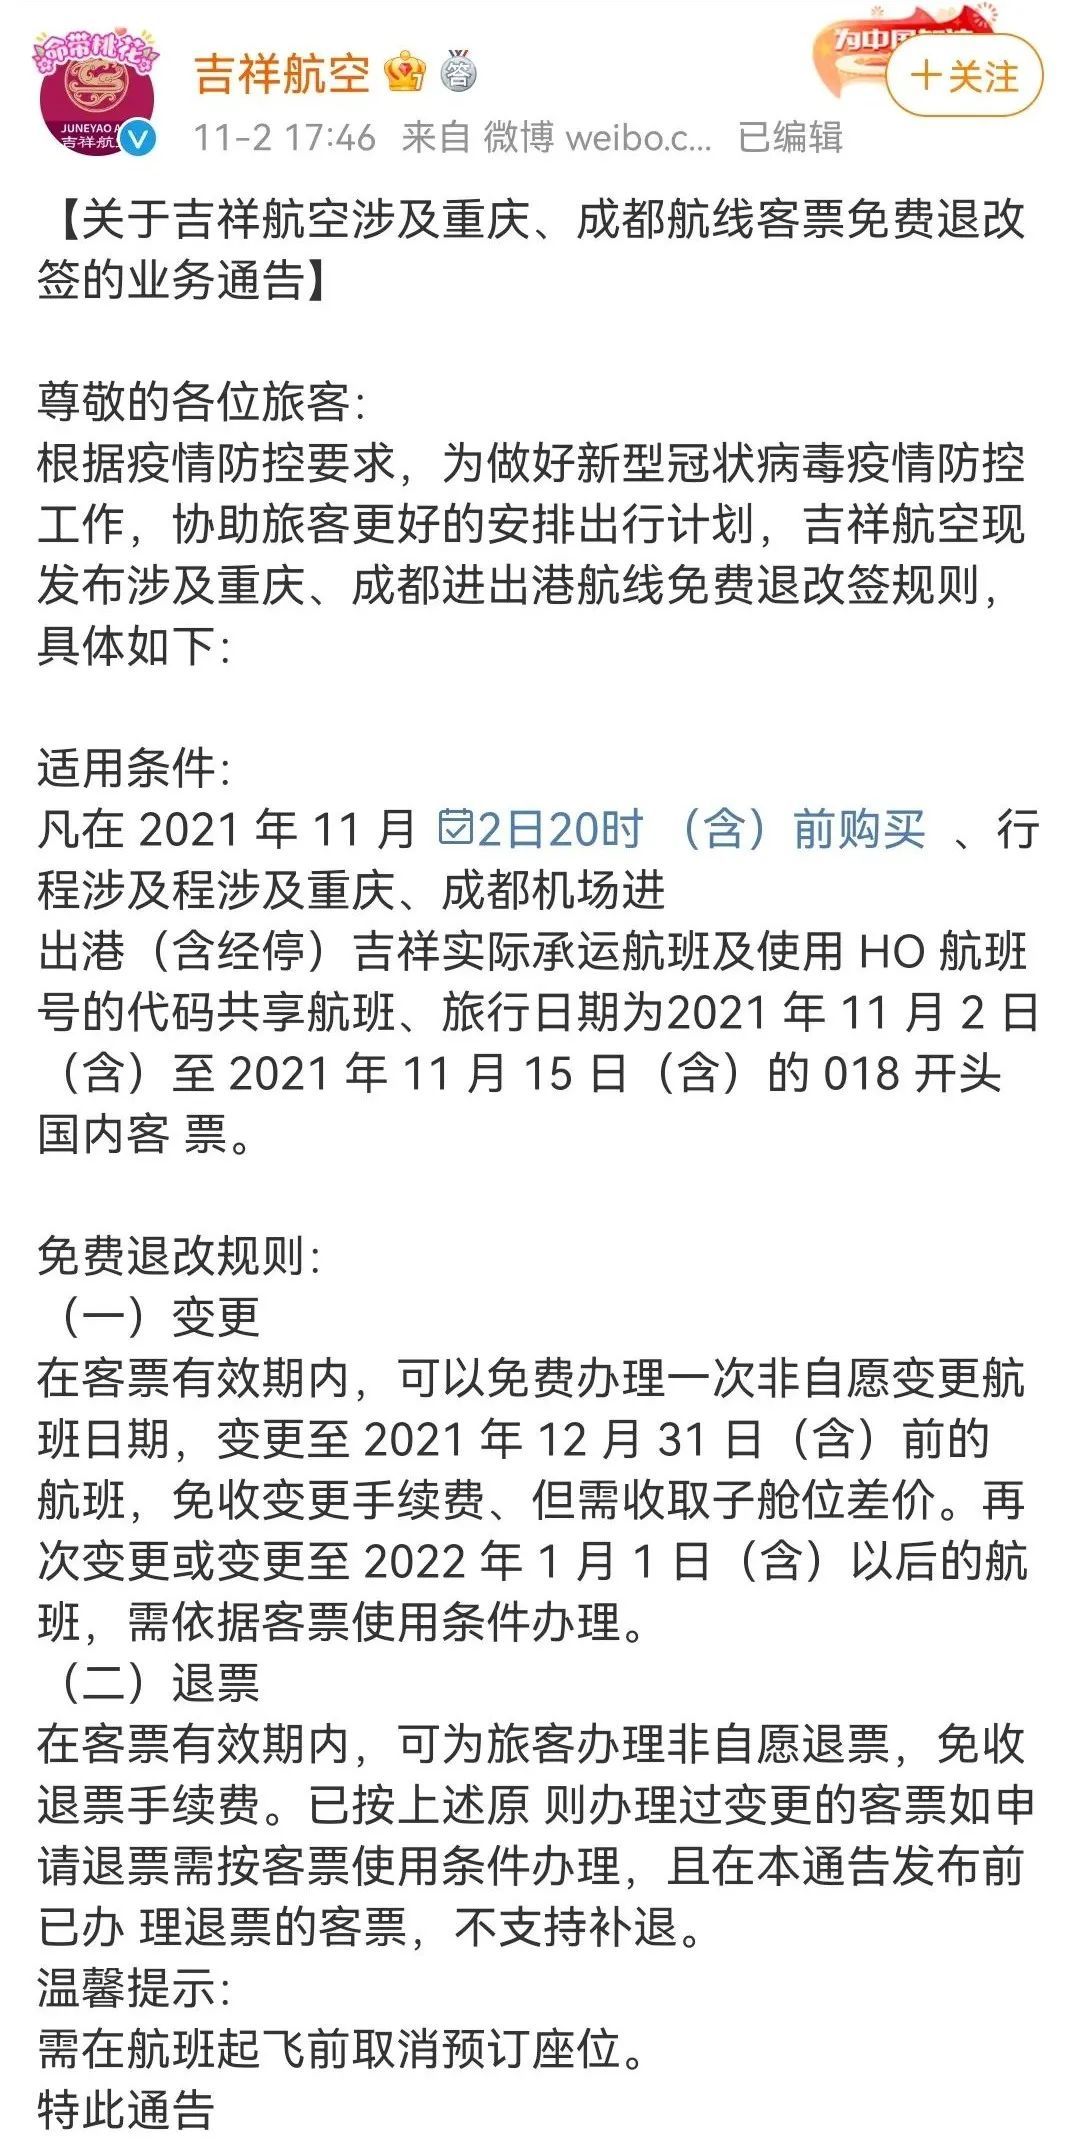 多家航司发布通知 涉及重庆、成都等地机票退改